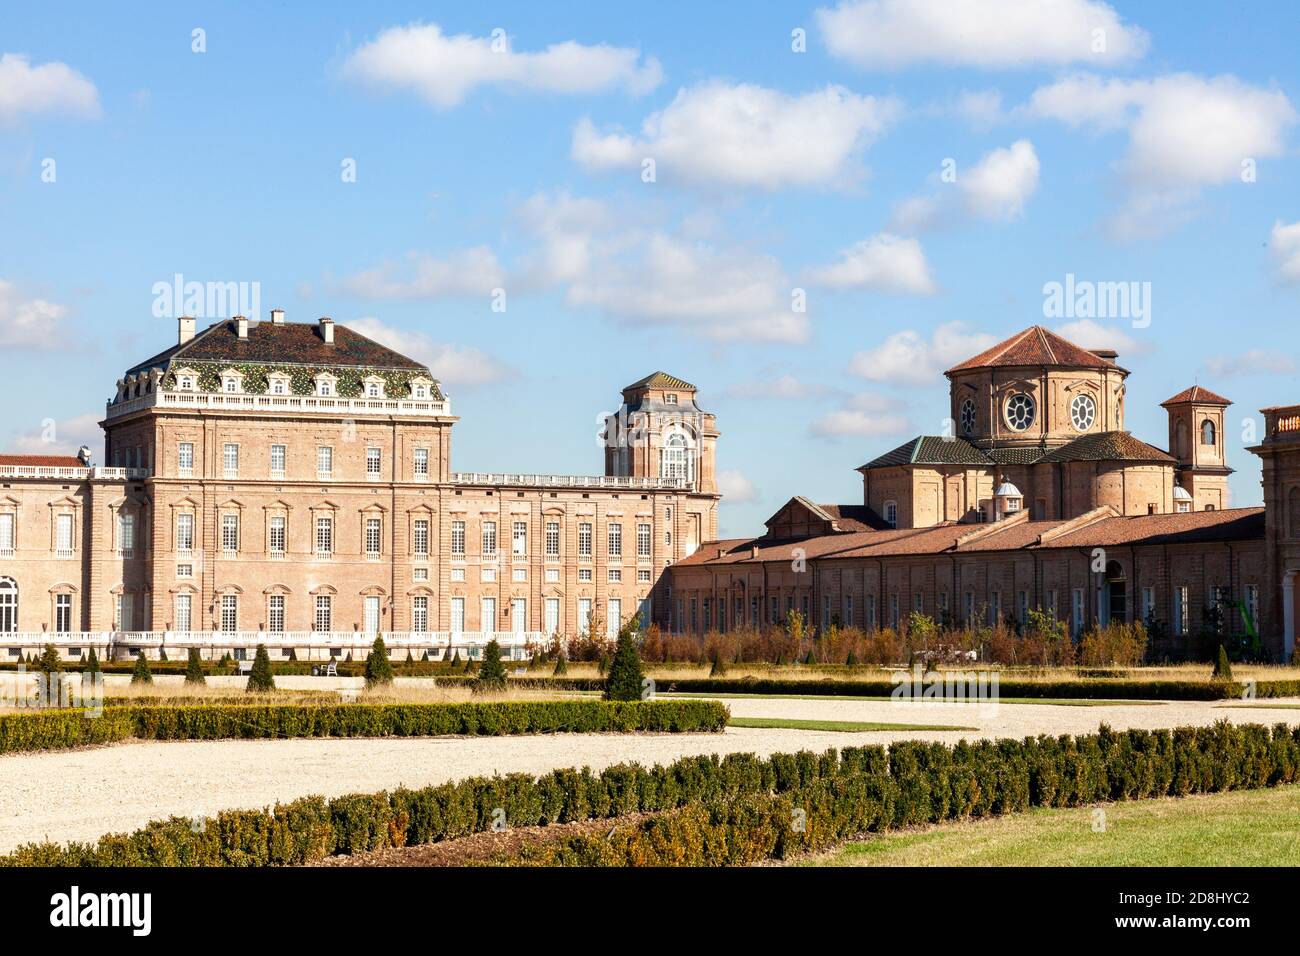 Torino, Italia. Palazzo di Venaria reale una delle residenze reali Savoia in Piemonte. Foto Stock